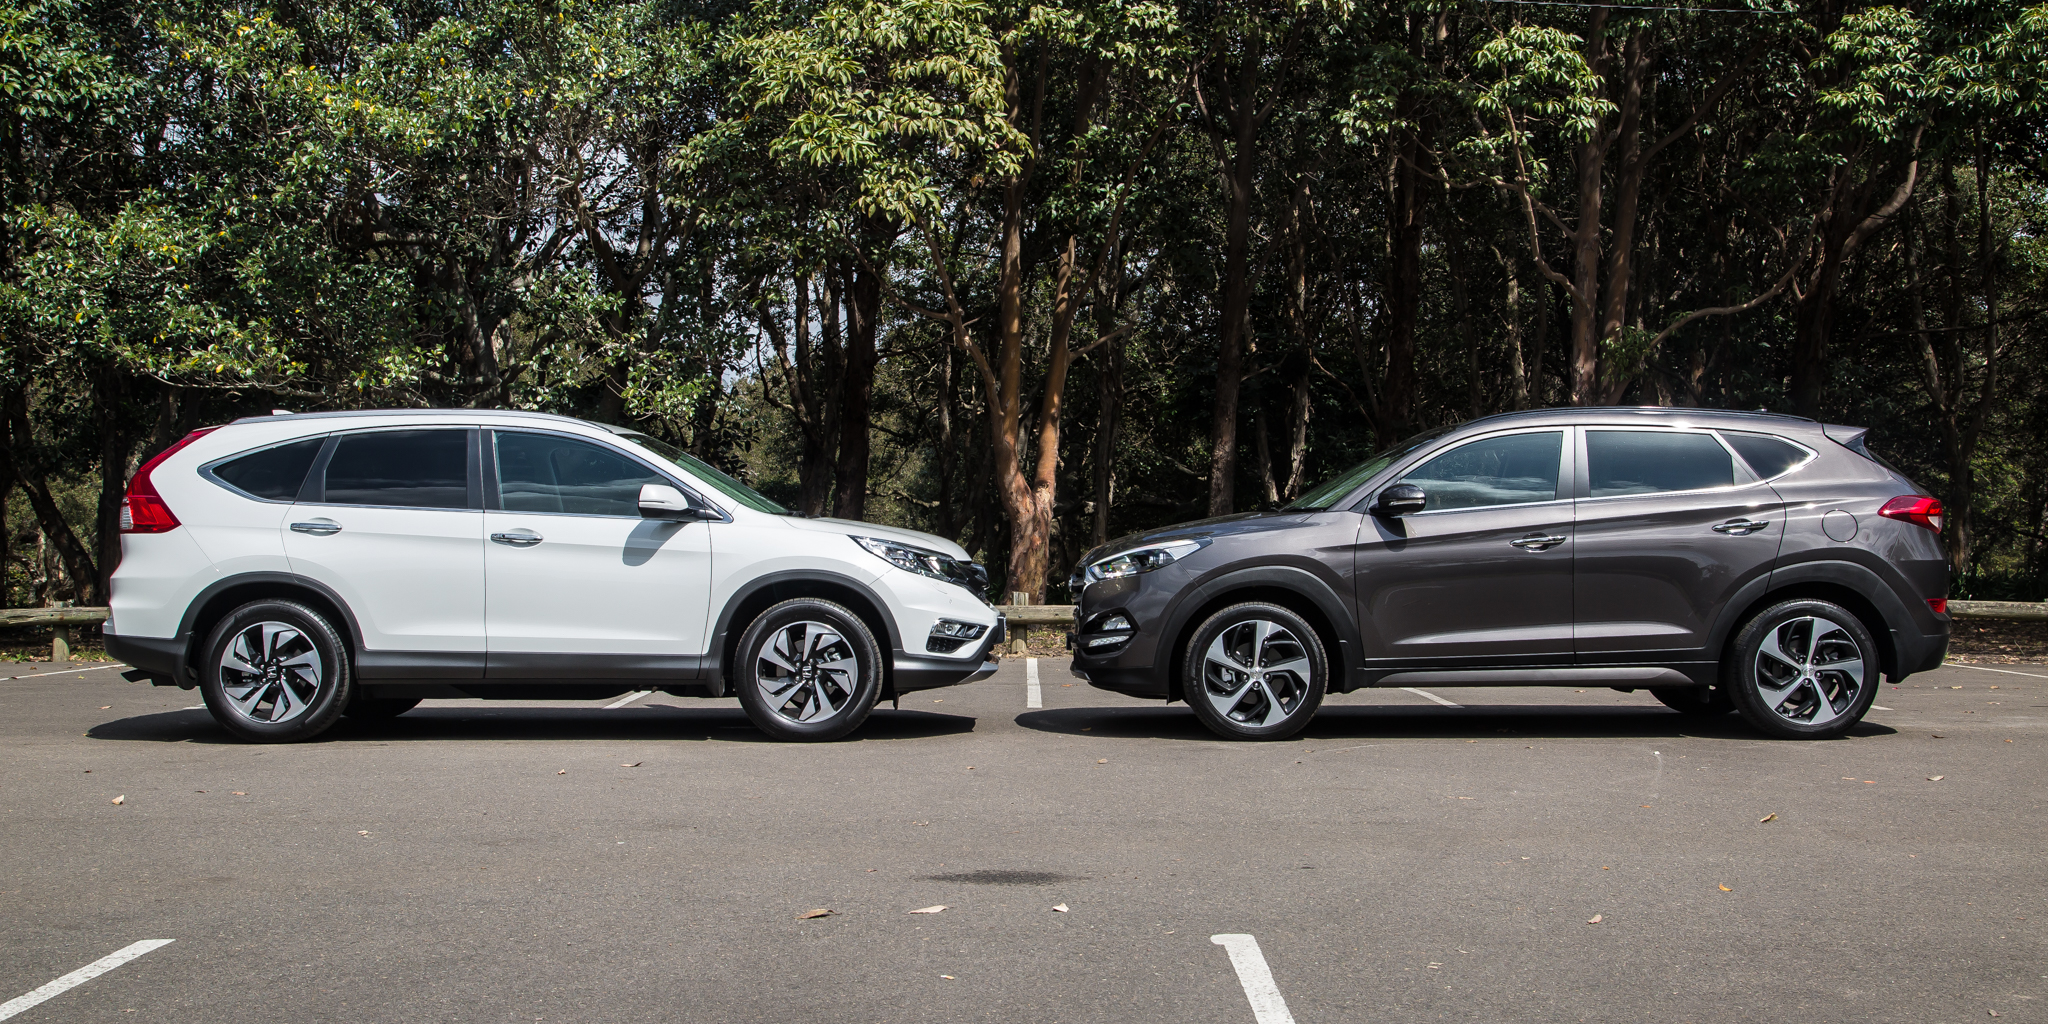 2015 Hyundai Tucson v Honda CRV Diesel Comparison